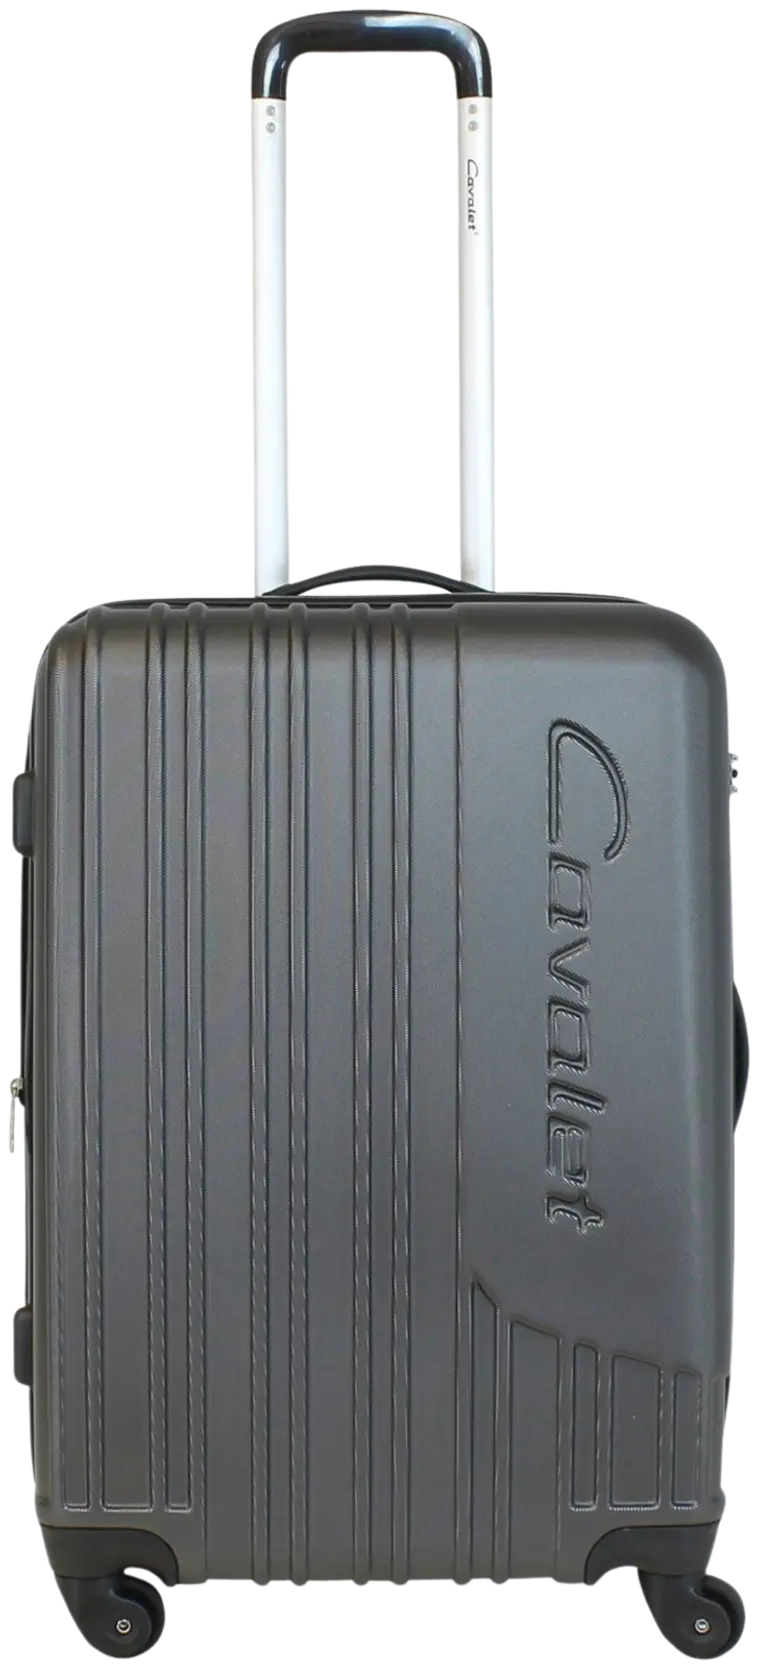 Cavalet Malibu matkalaukku M 65 cm, tummanharmaa